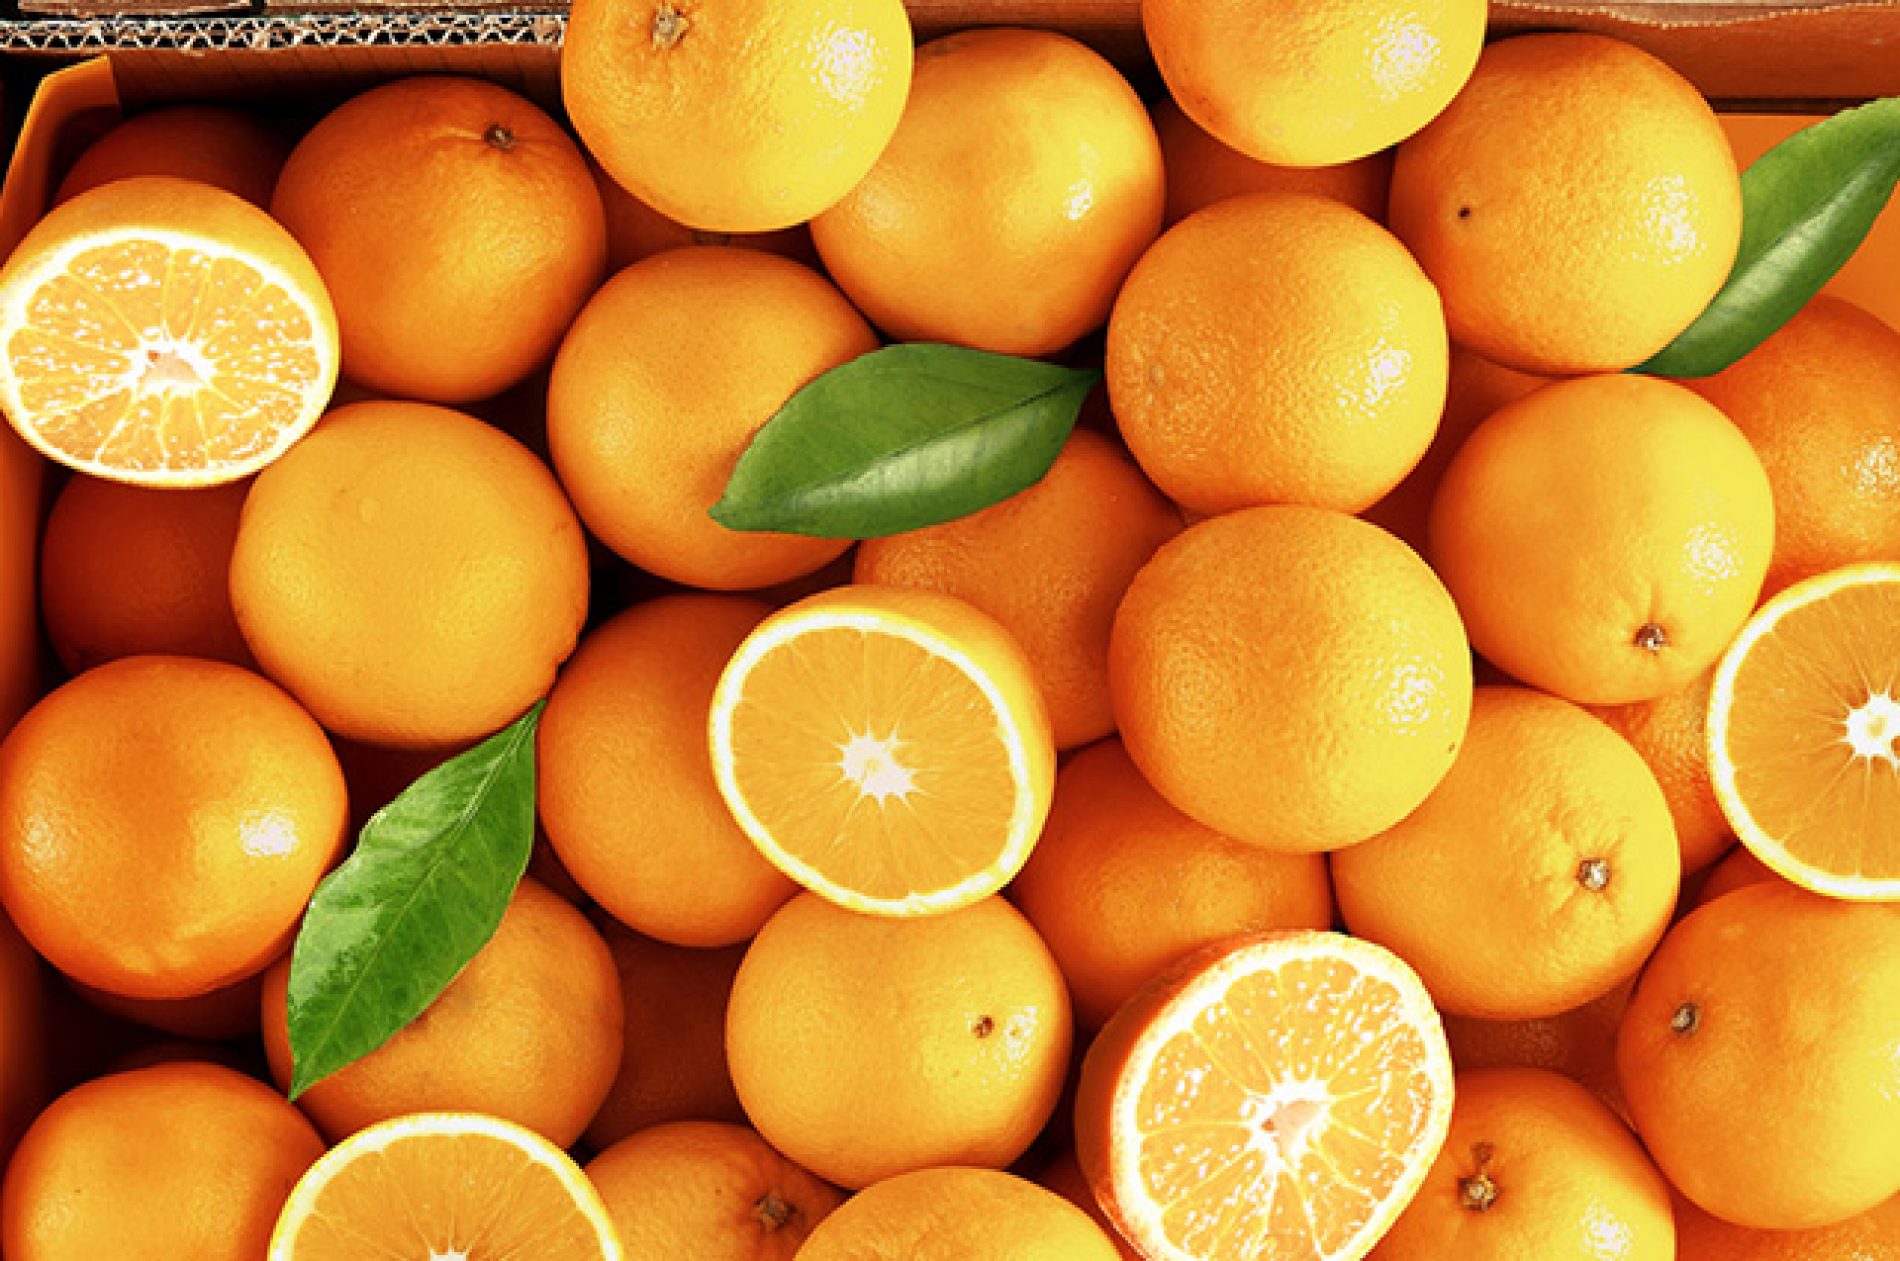 COLÔMBIA: Autônomo é preso por furto de laranjas na Lagoinha